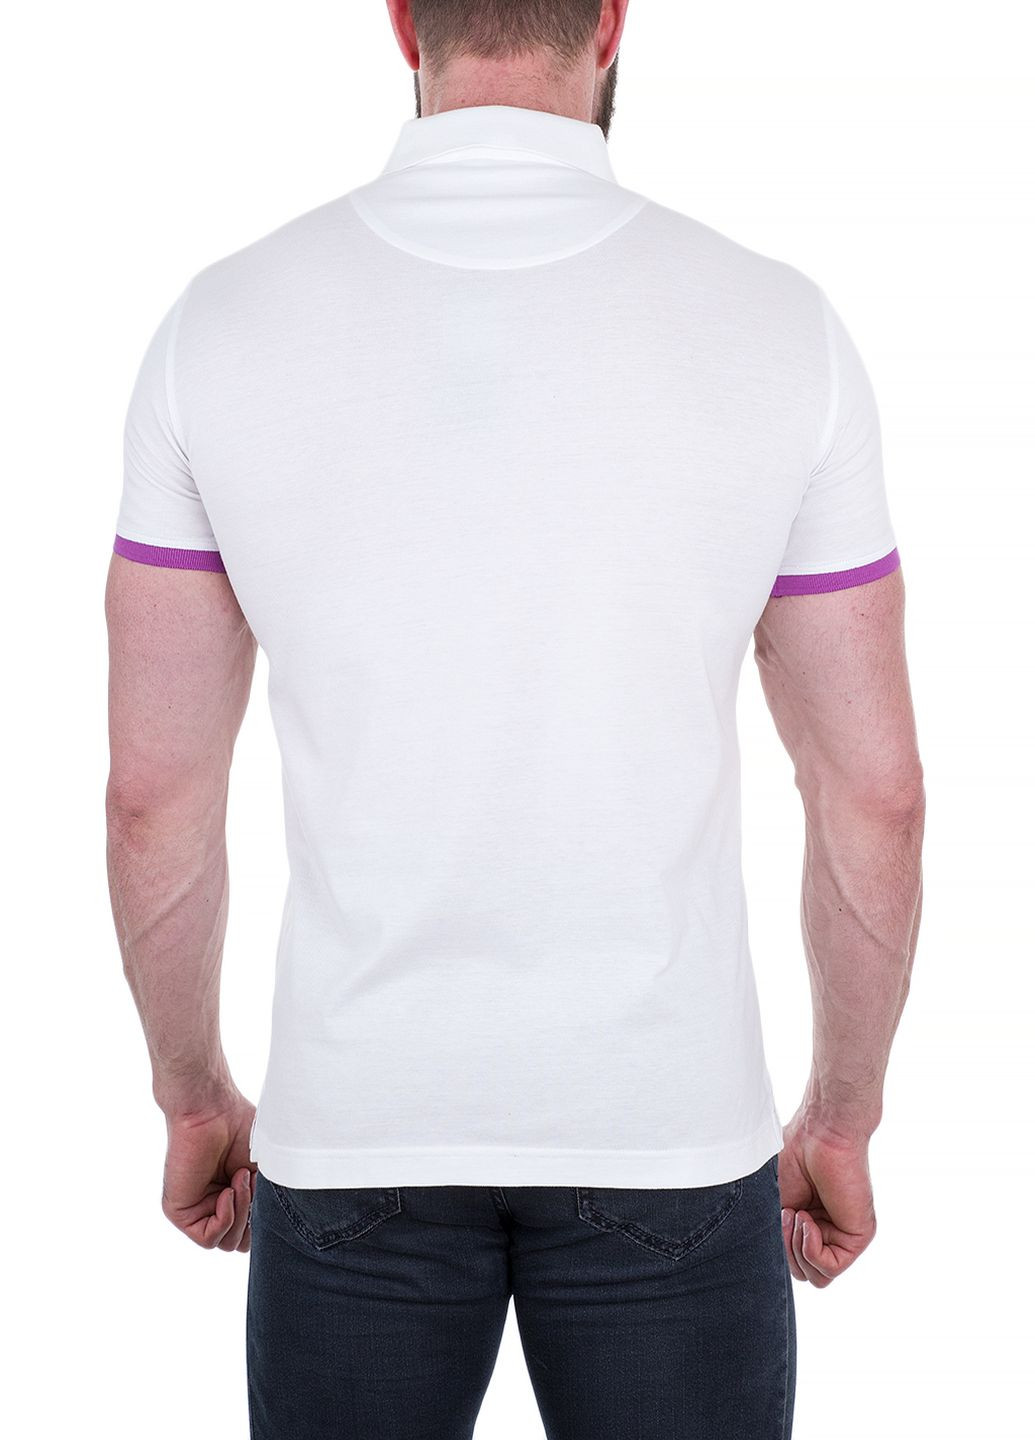 Белая футболка-поло для мужчин Trussardi Jeans однотонная